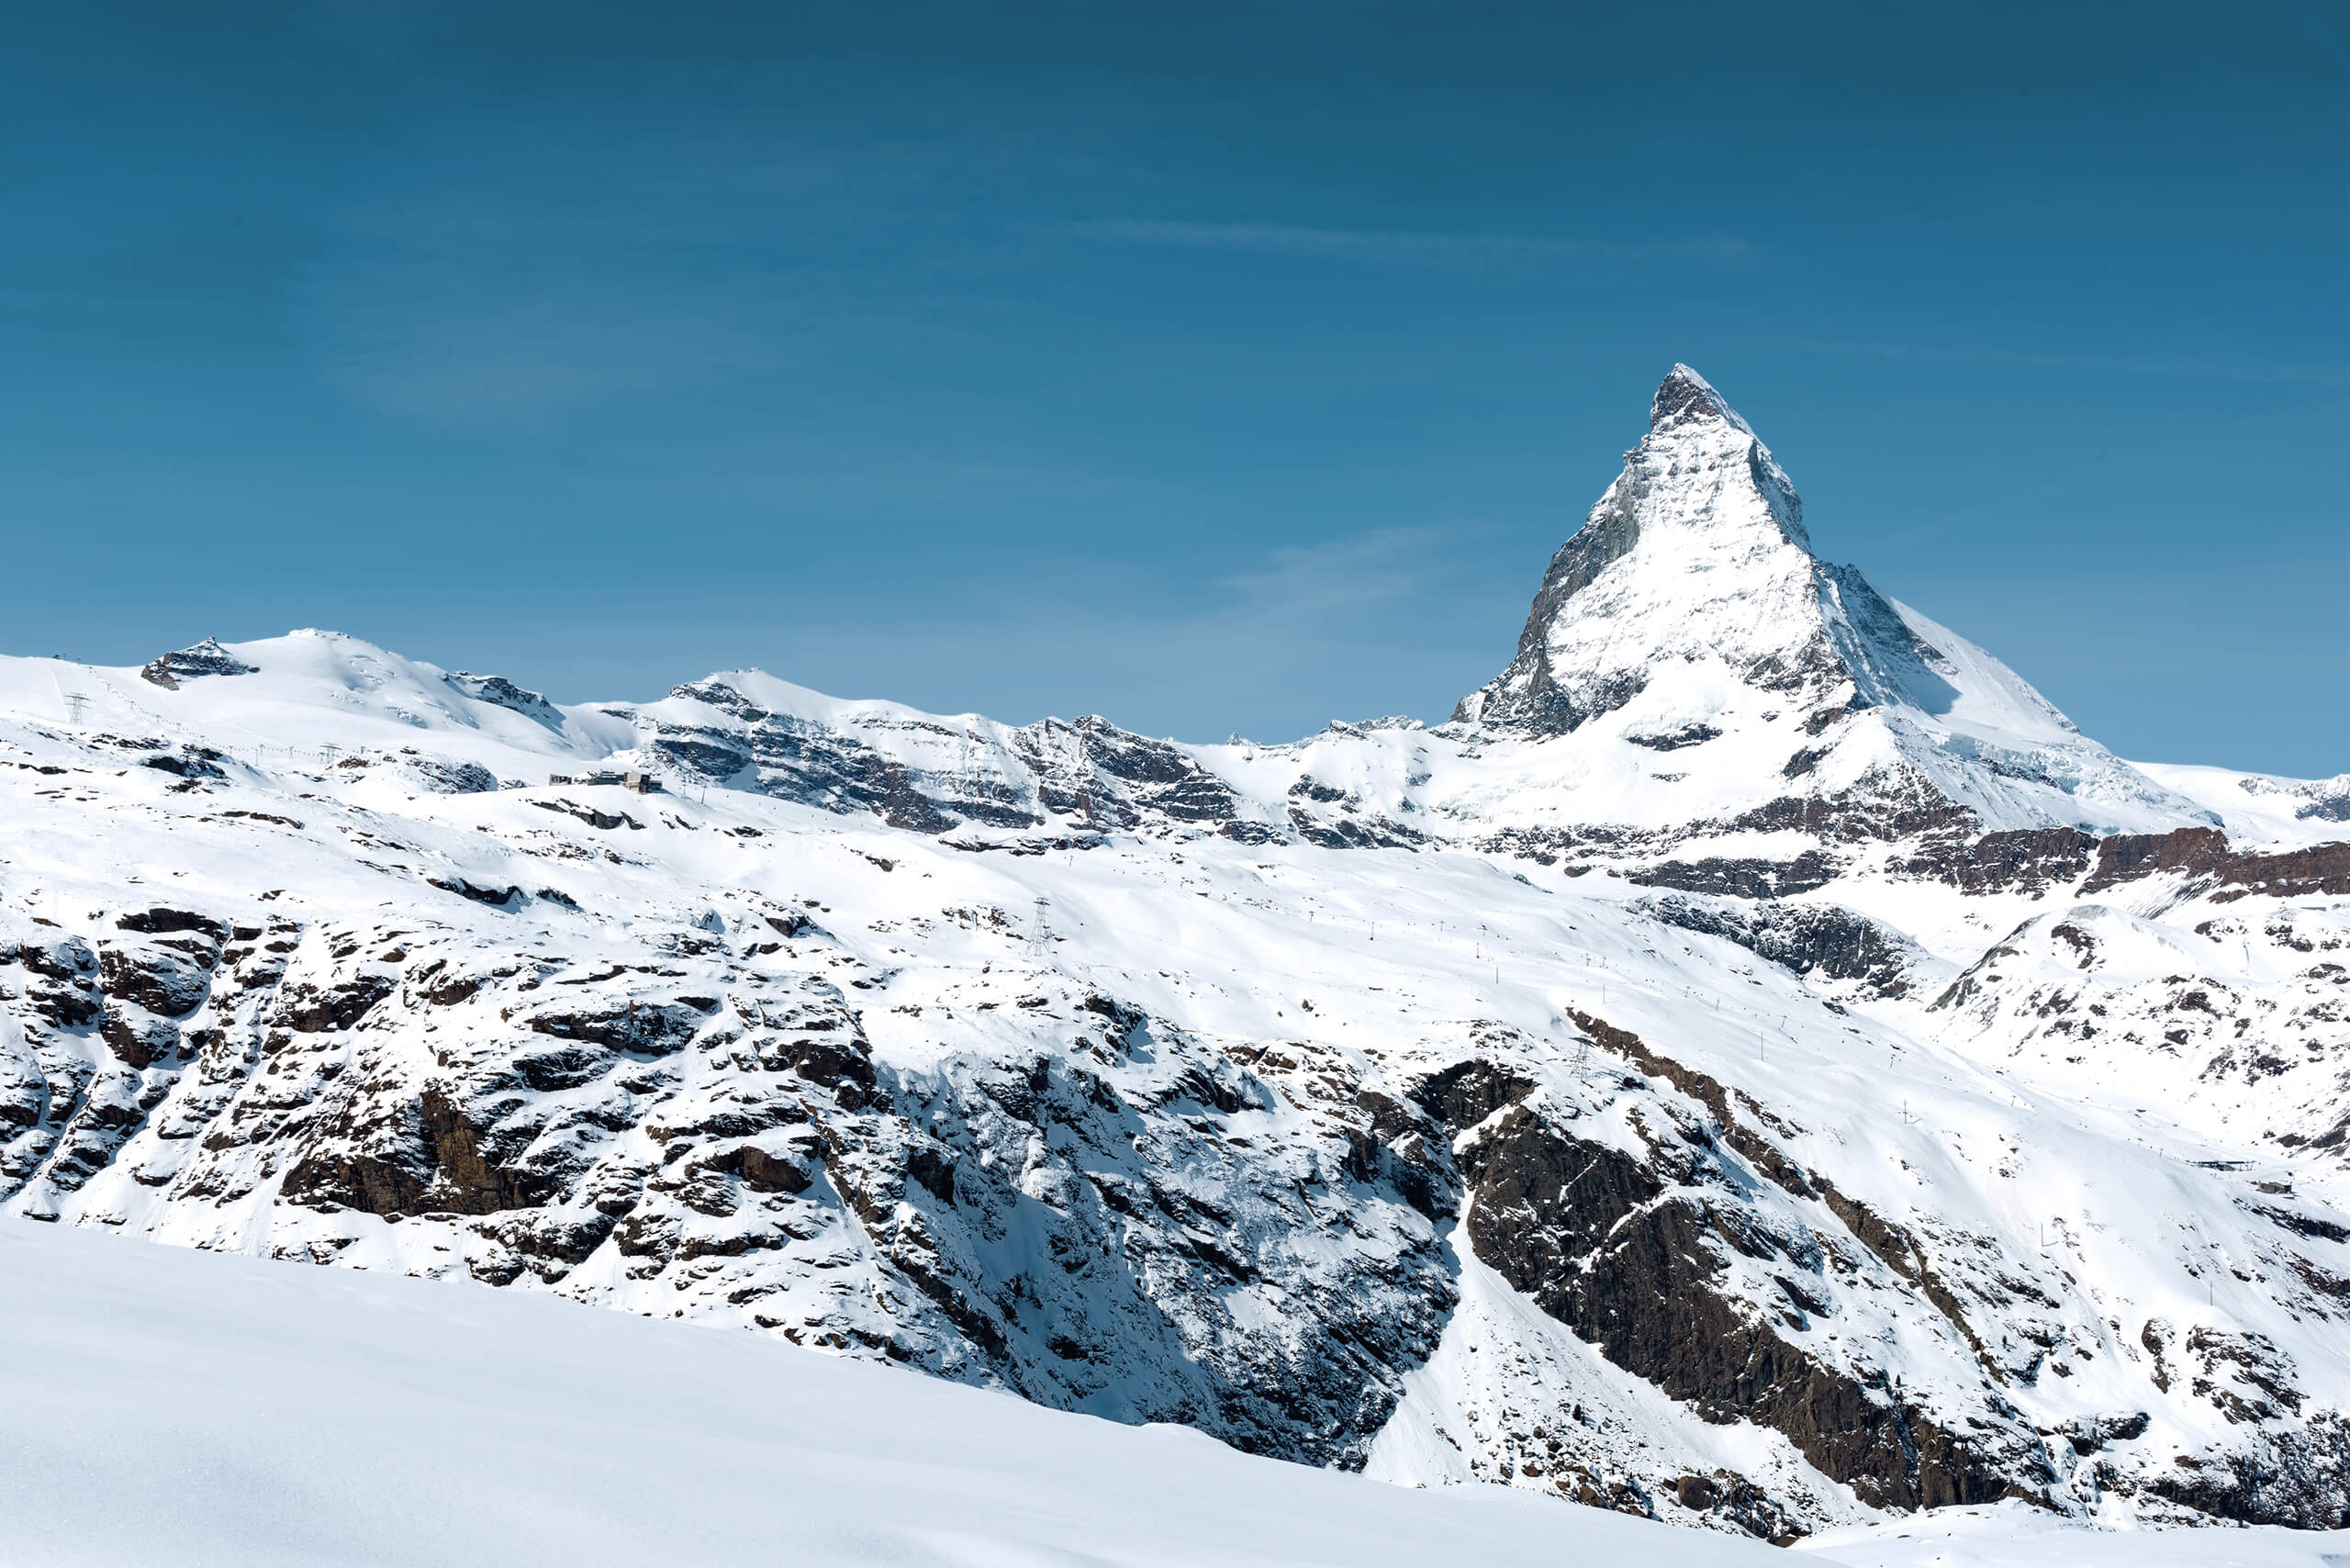 Matterhorn pic Oct 2020